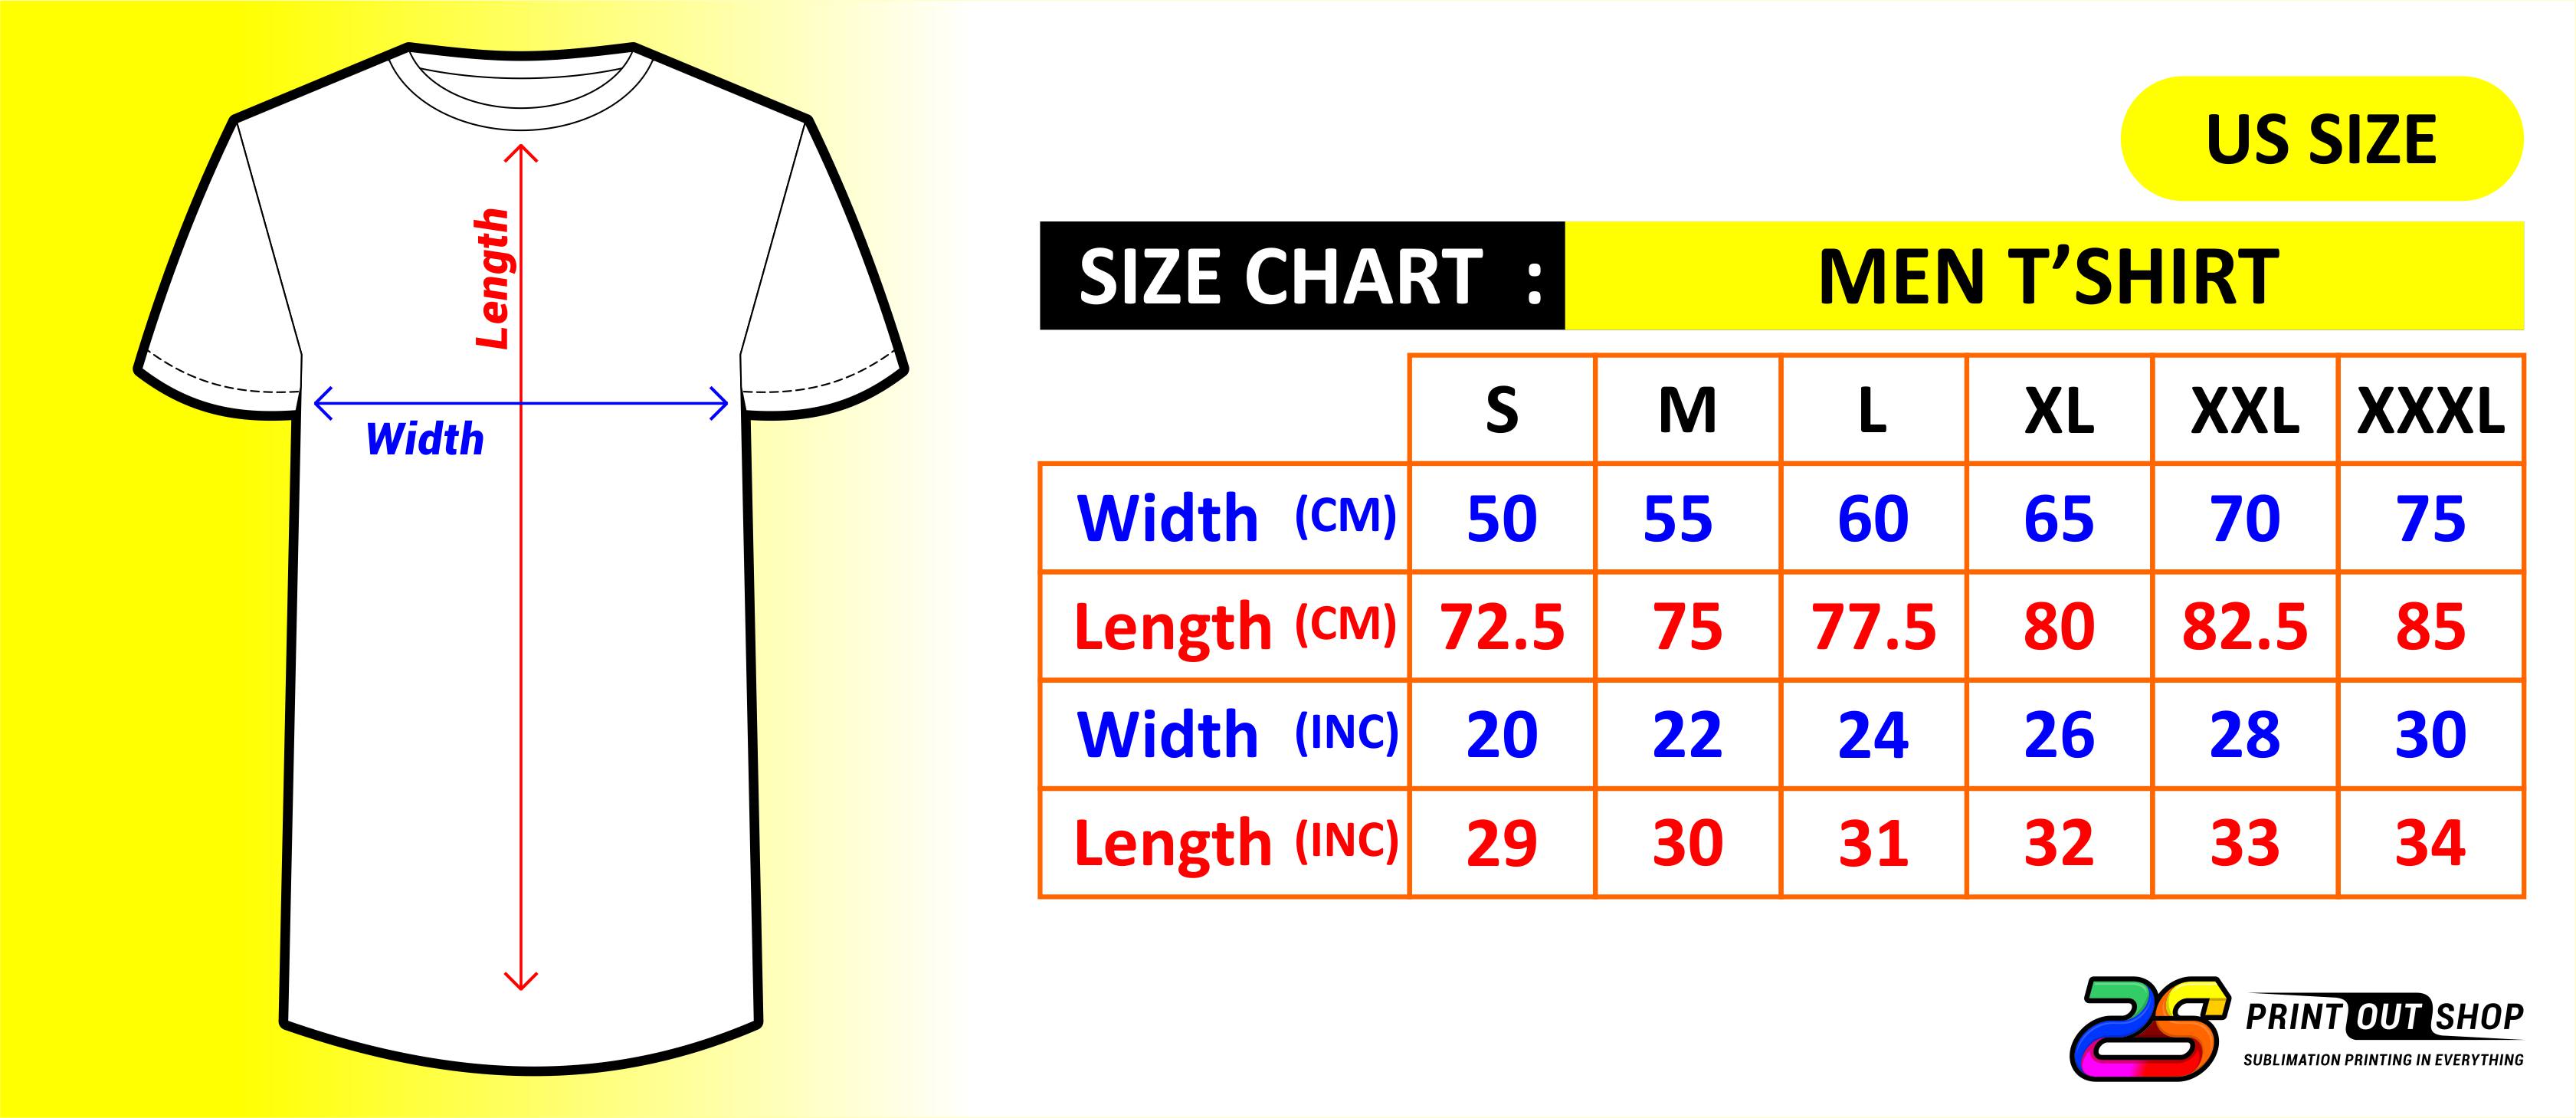 size-chart-men-t-shirt-us-size-printout-shop